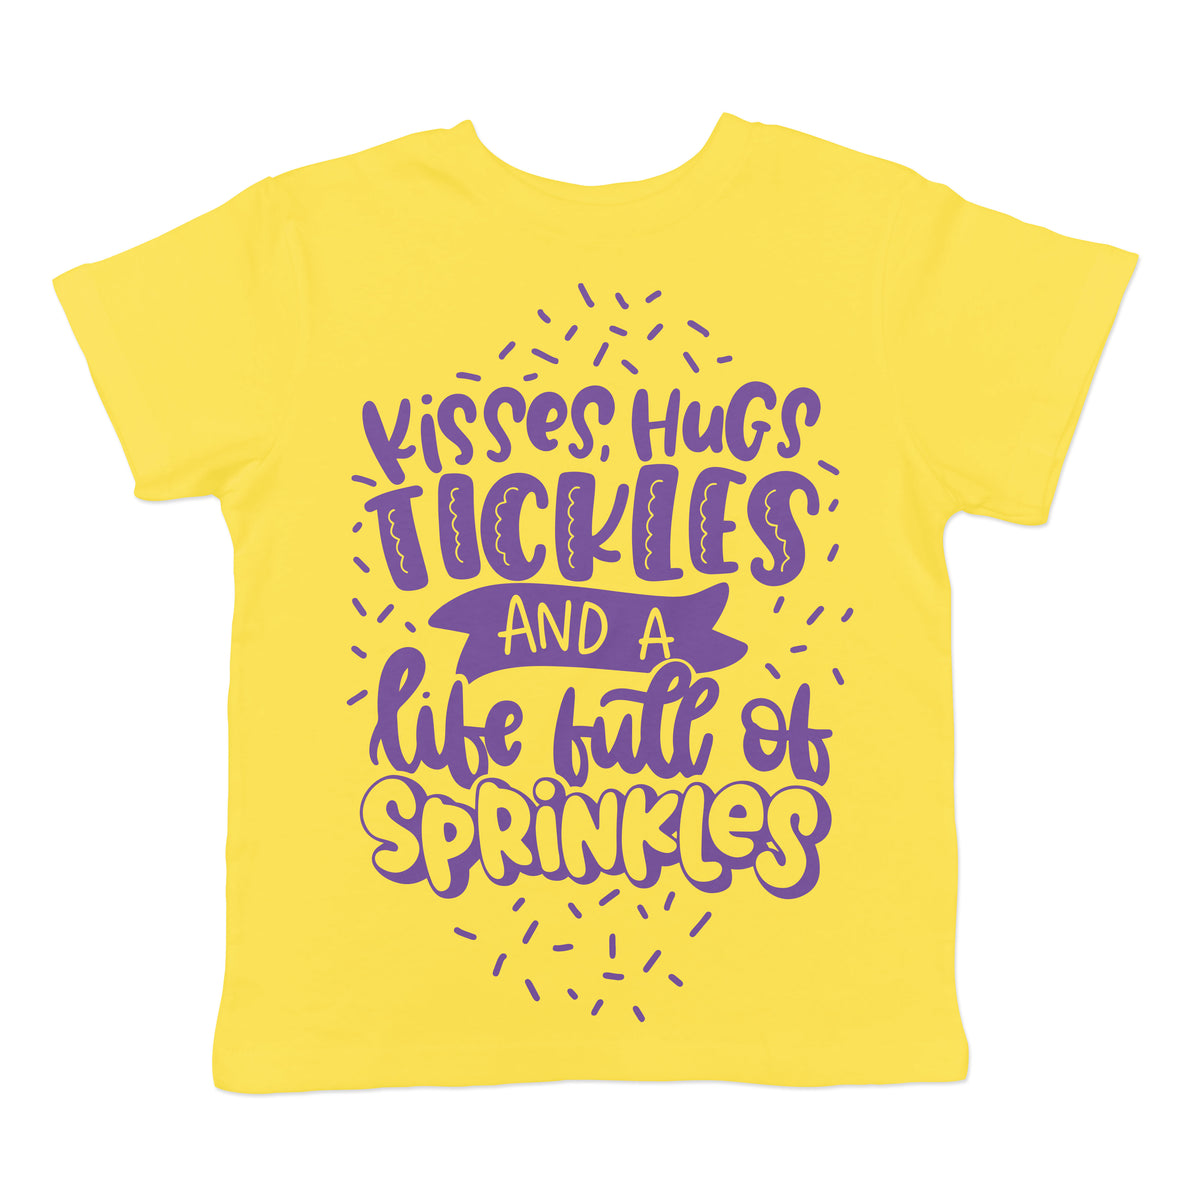 Life Full of Sprinkles - Yellow Kid's Tee - West+Mak